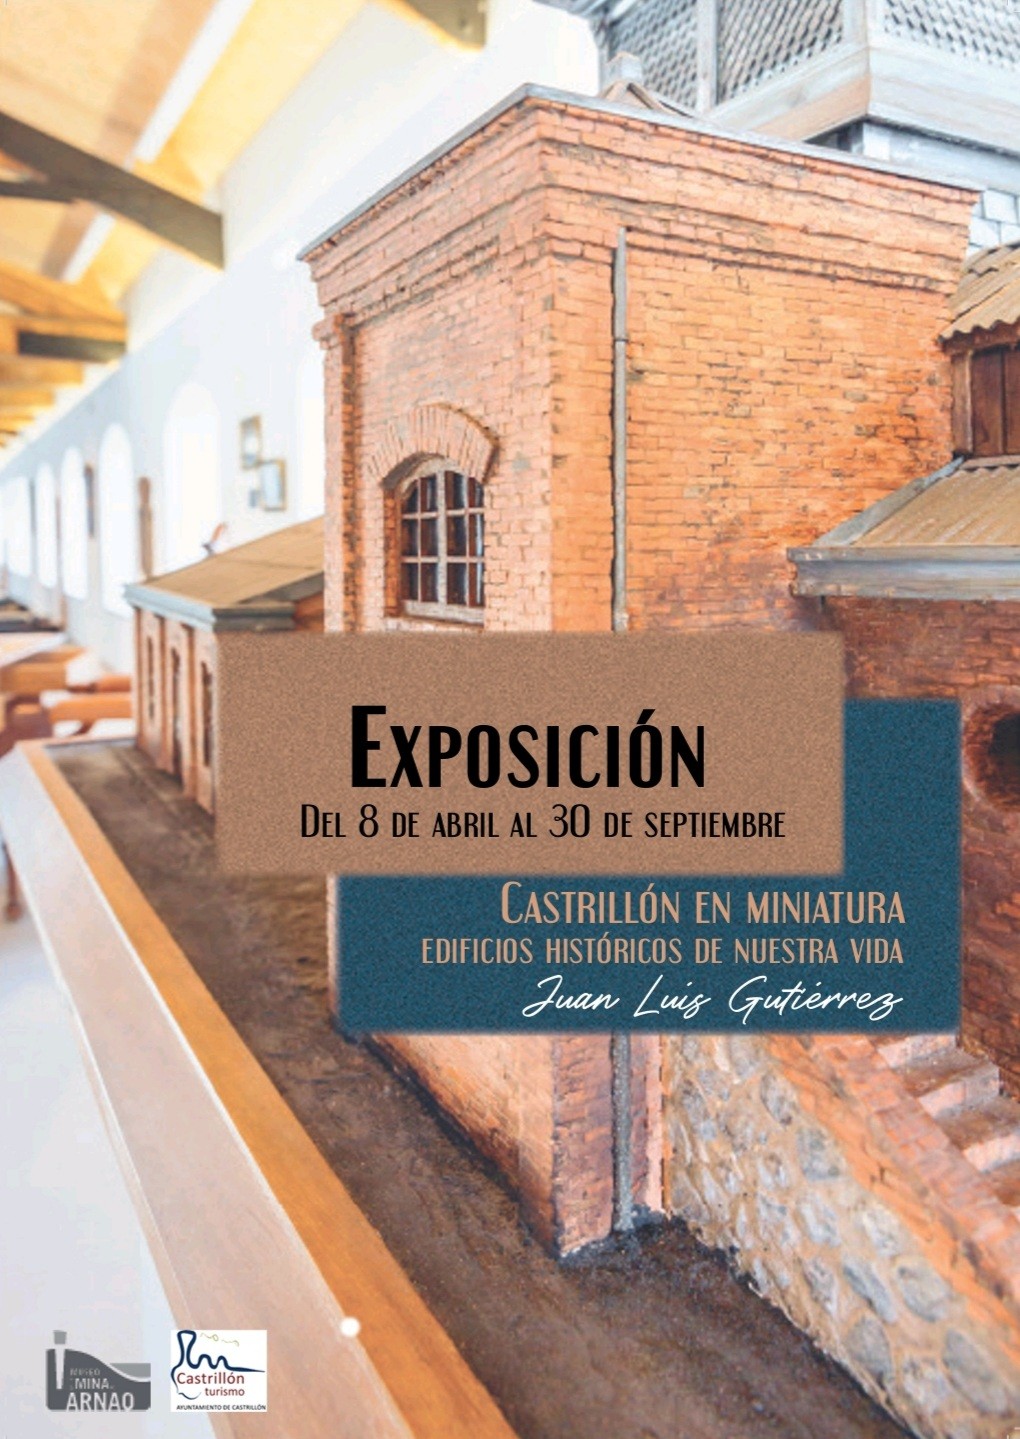 CARTEL_EXPOSICION-CastrillonEnMiniatura